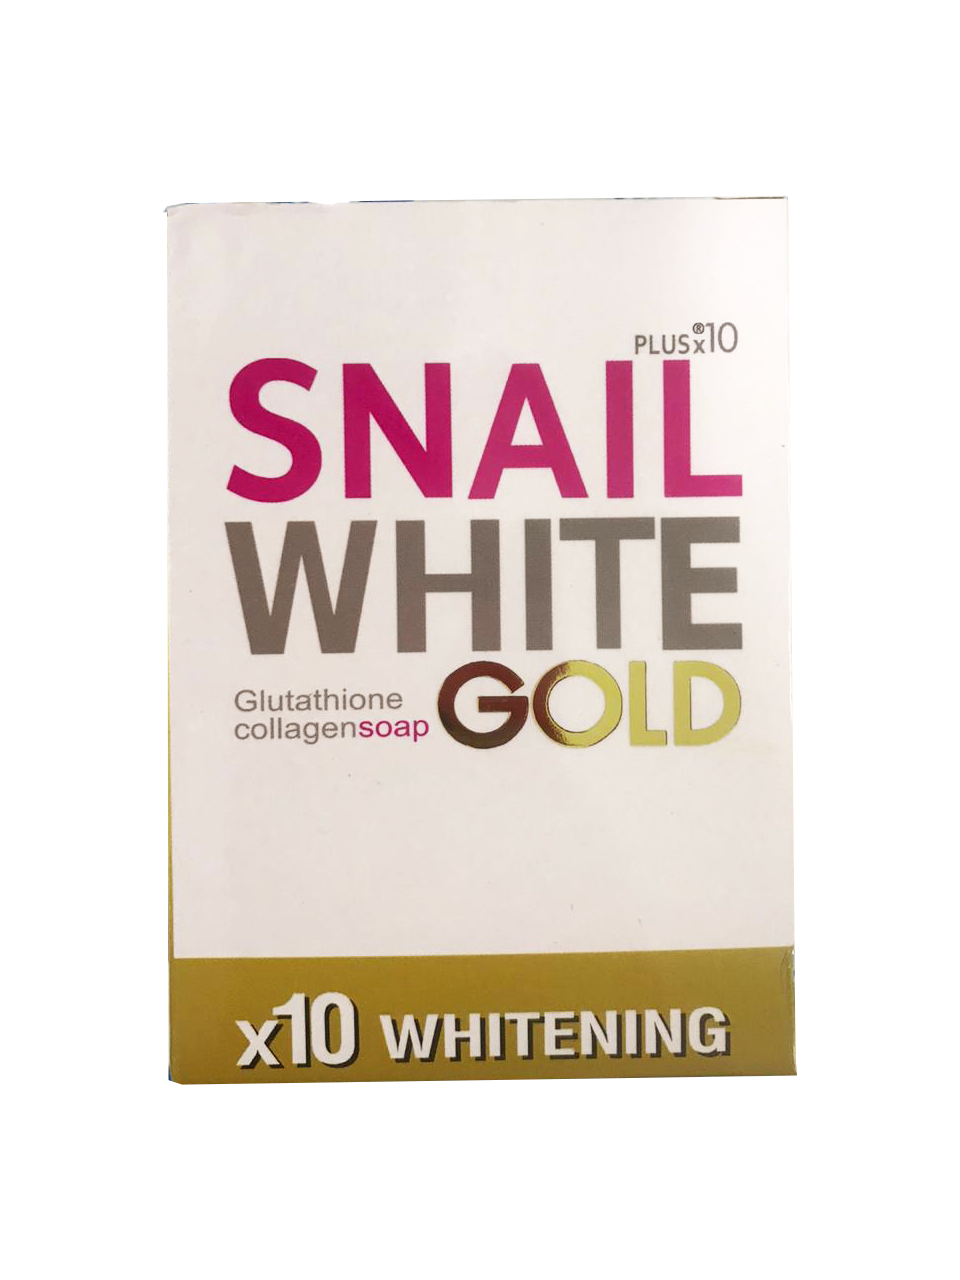 Snail White Gold Gluthathione Collagen Soap